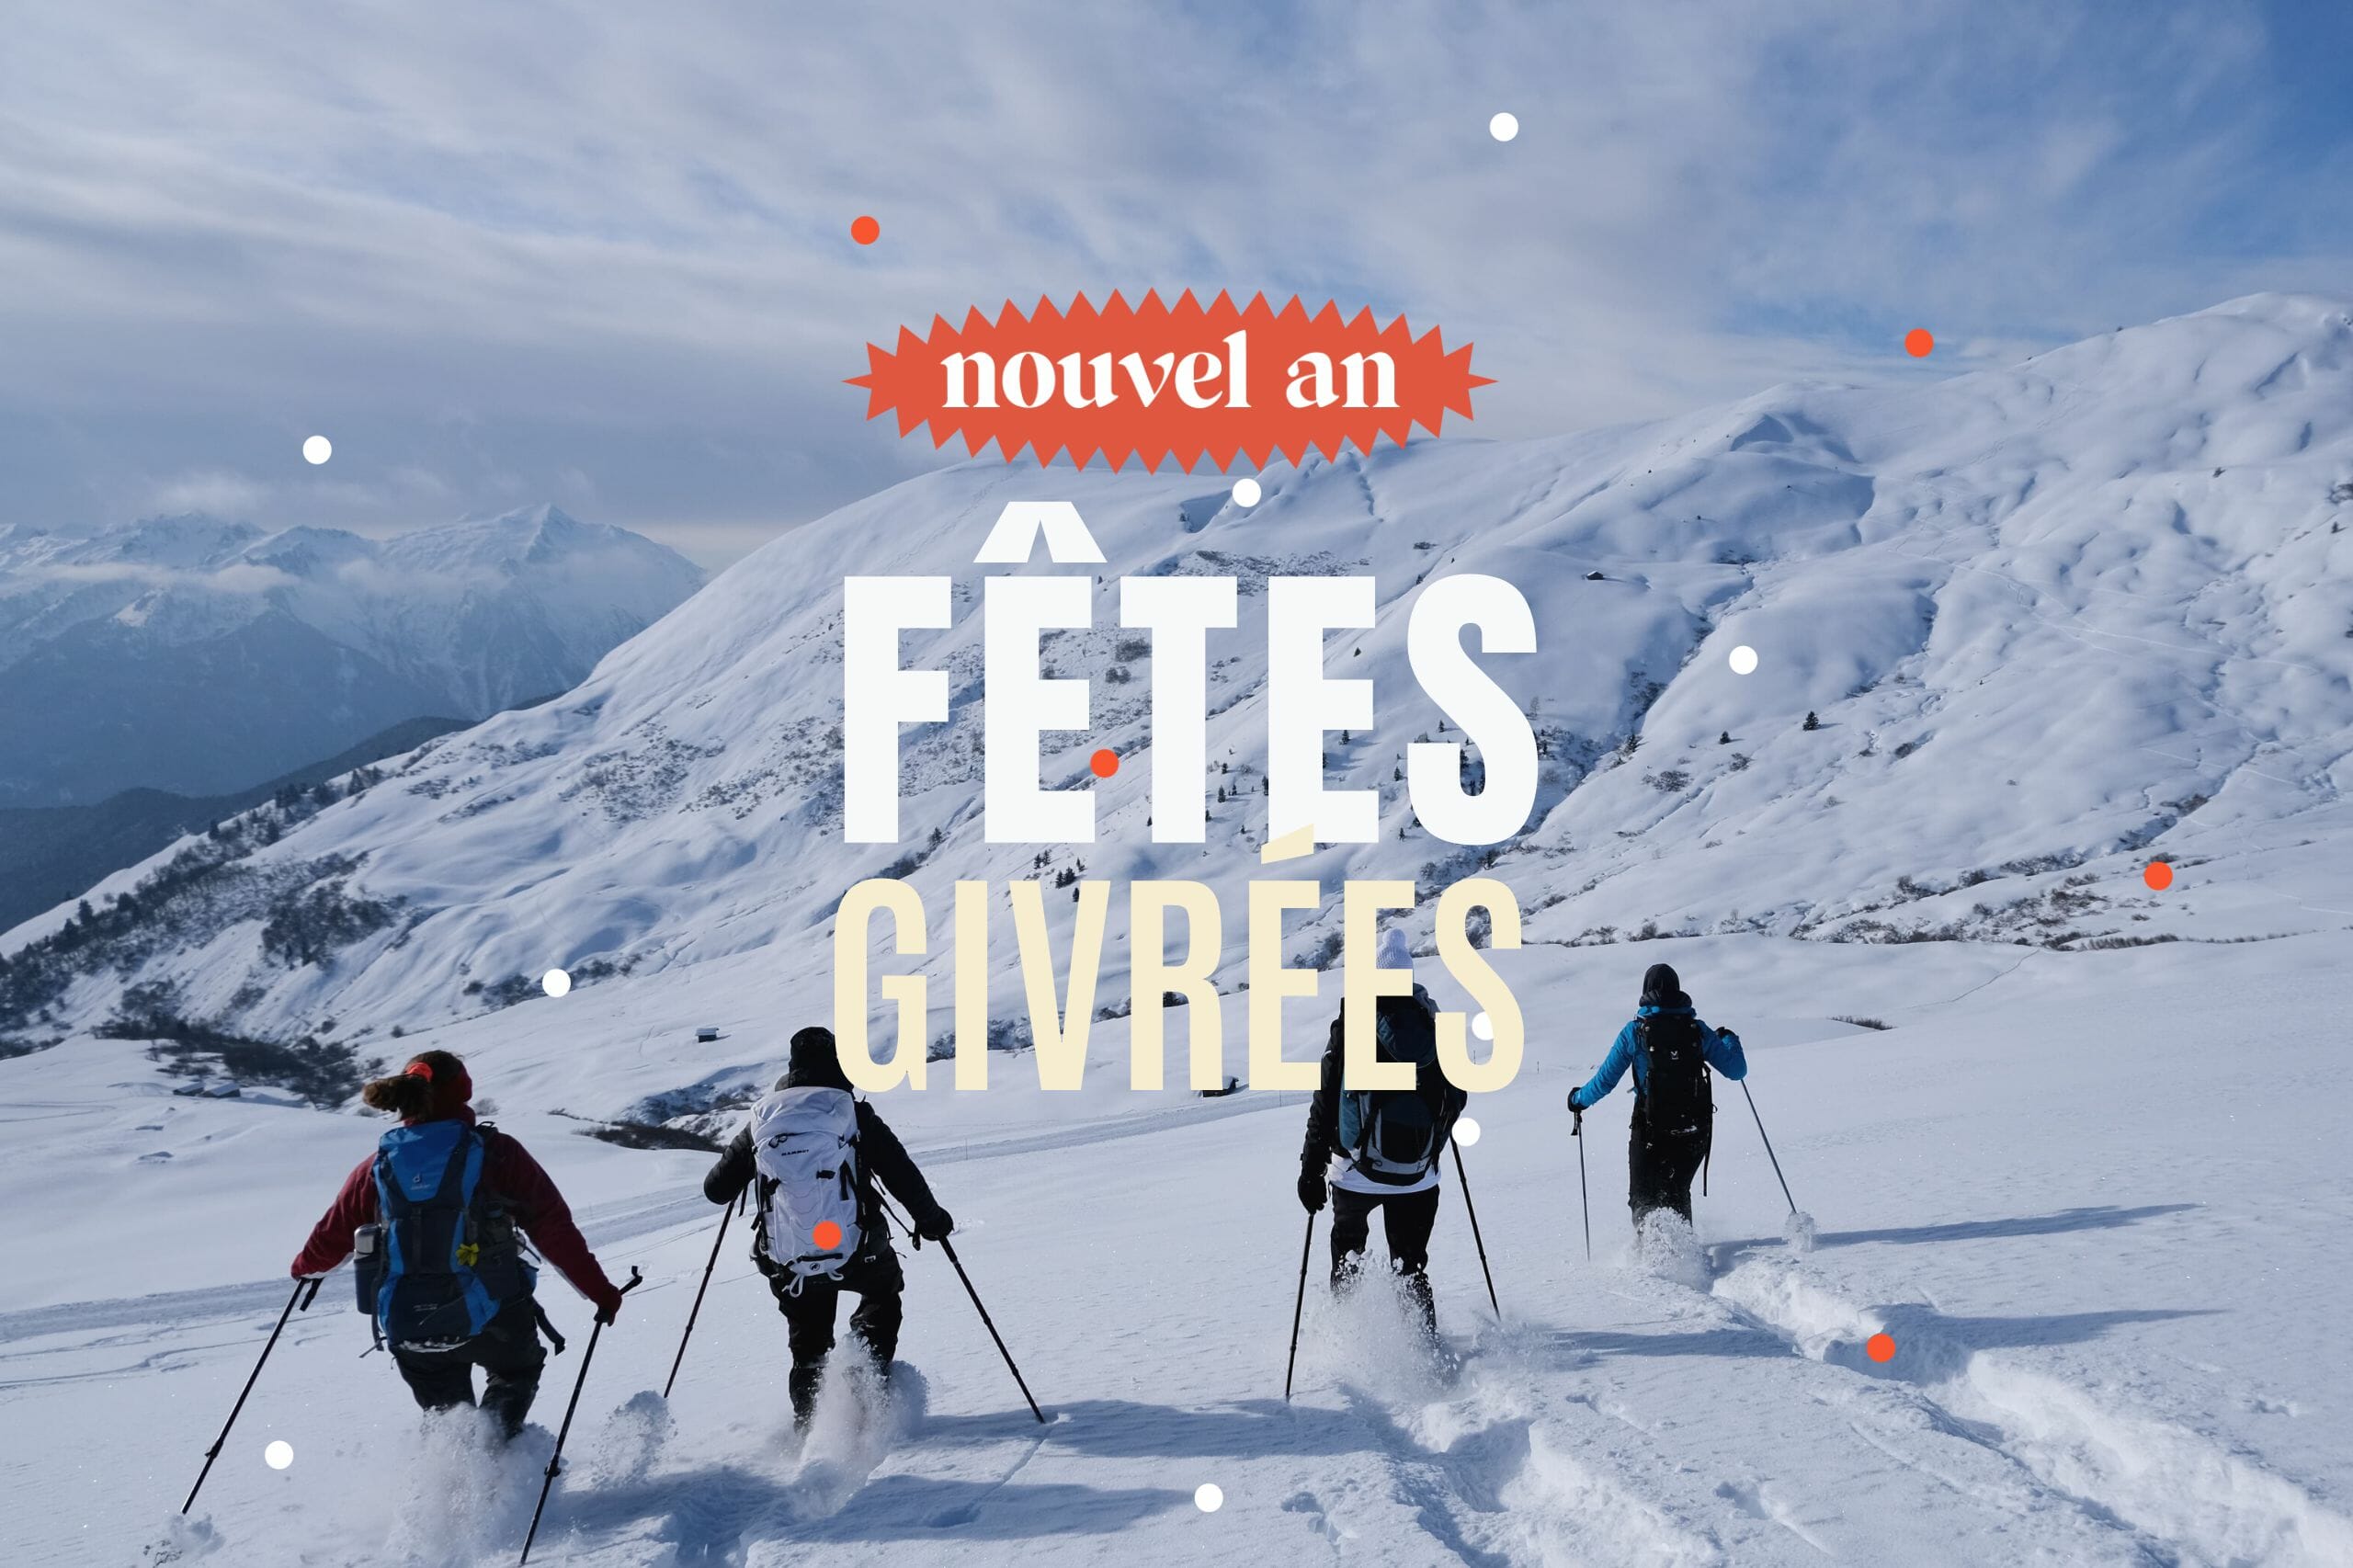 Les fêtes givrées : Nouvel an rando raquettes et construction d'igloo en Savoie